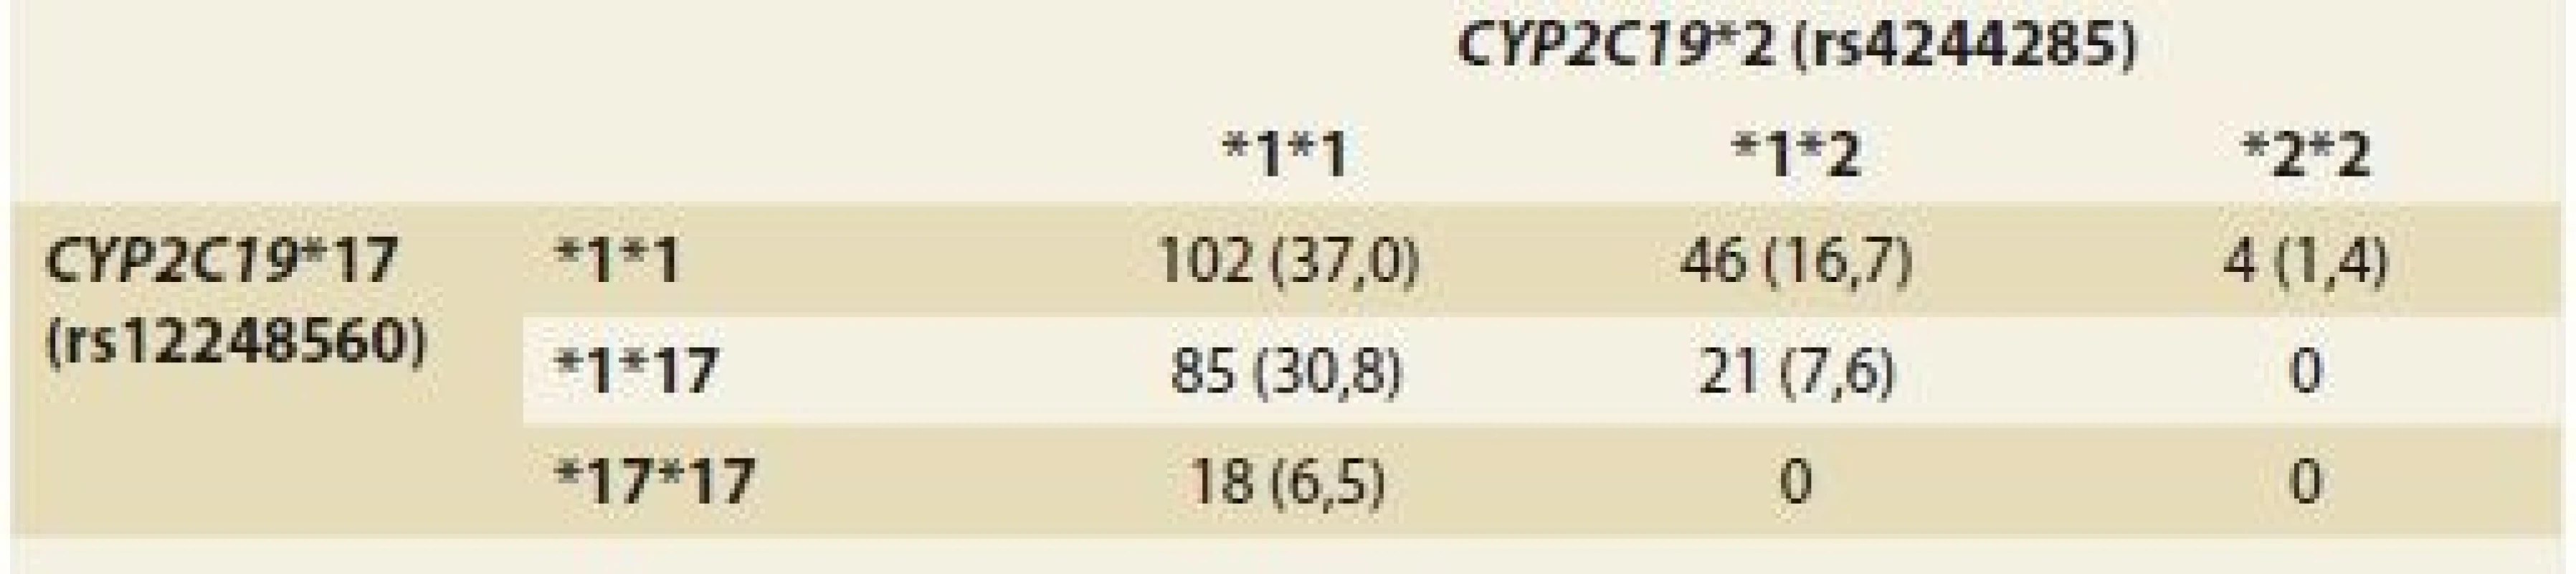 Haplogenotypové frekvence <i>CYP2C19</i> u pacientů s GERD.<br>
Tab. 3. <i>CYP2C19</i> haplogenotype frequencies in patients with GERD.